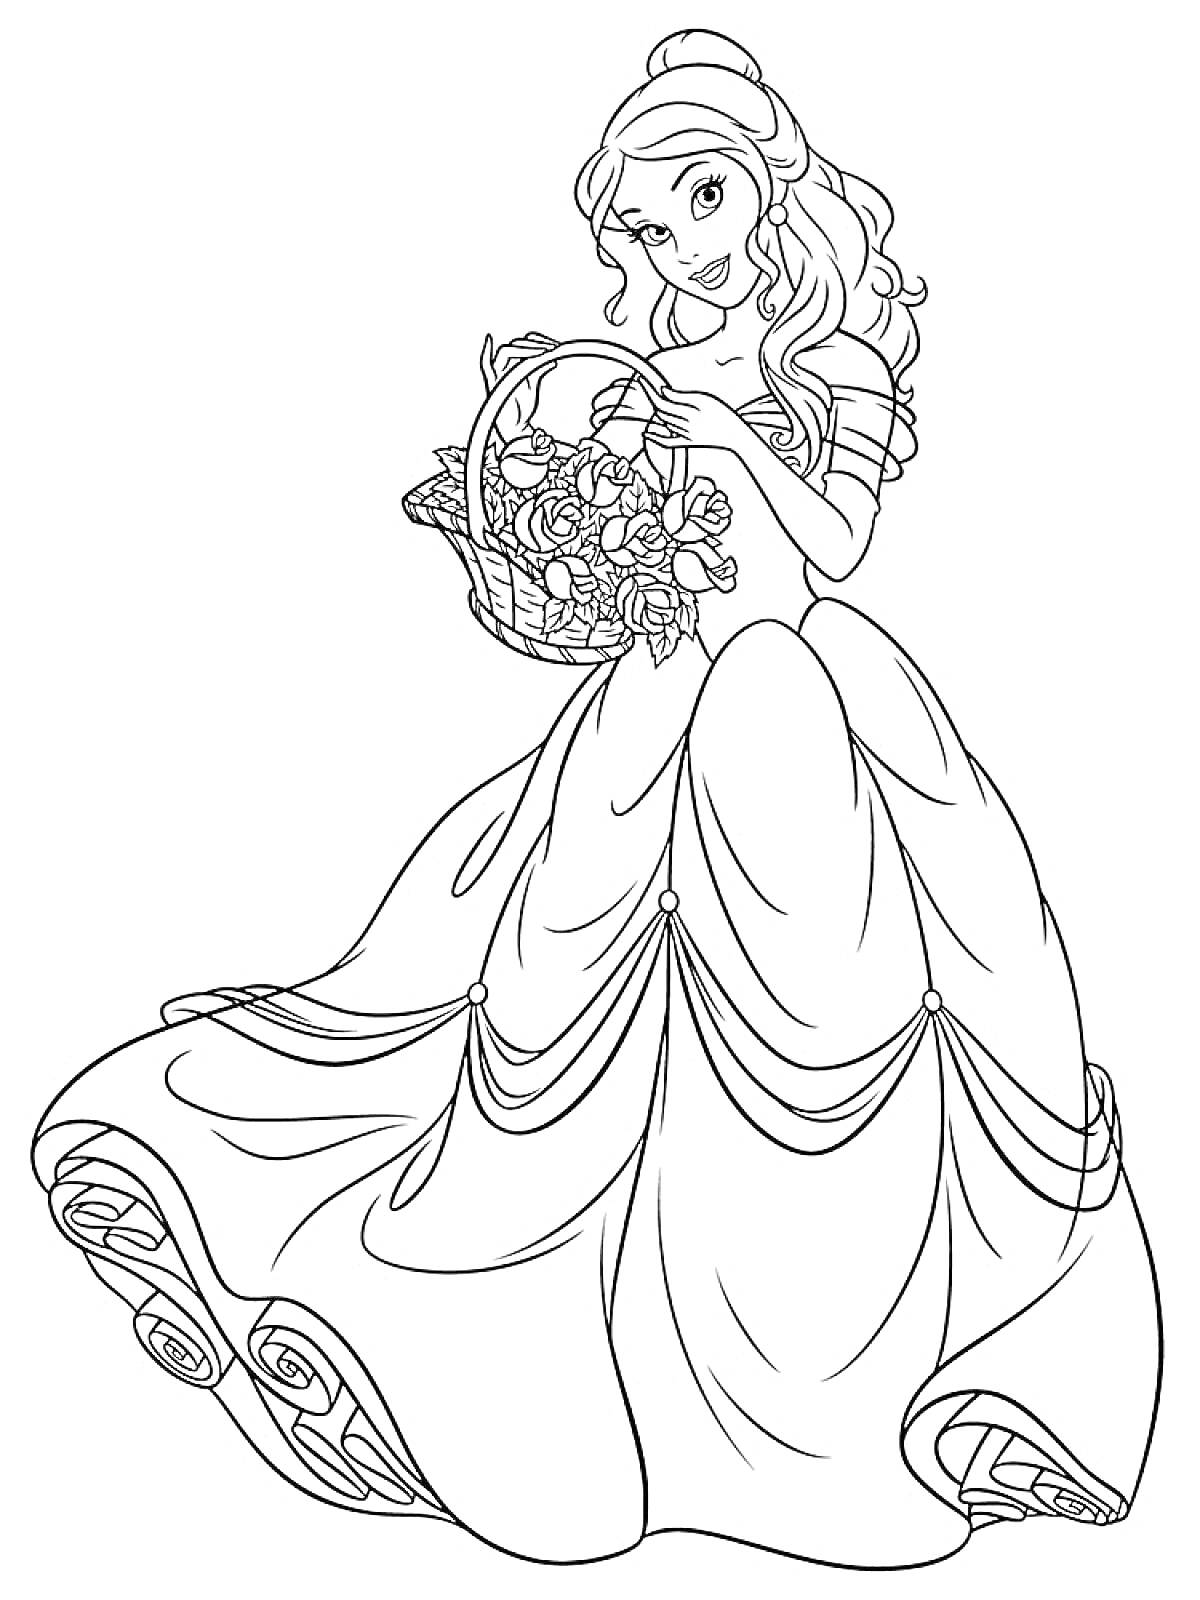 Раскраска Принцесса с длинными волосами в пышном платье, держащая корзину с цветами